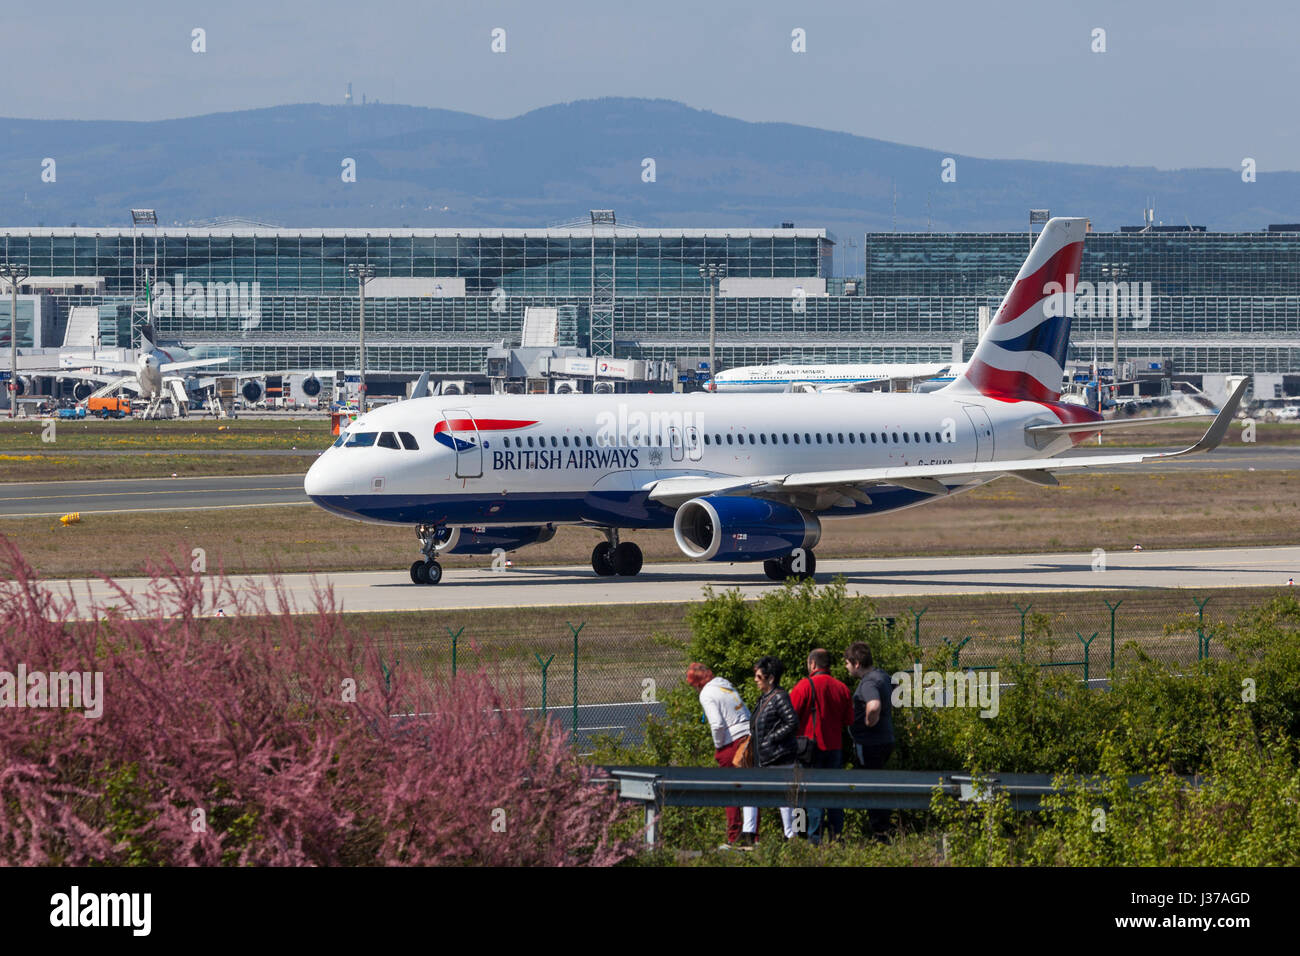 Francfort, Allemagne - le 30 mars 2017 : British Airways Airbus A321-231 à l'aéroport international de Francfort Banque D'Images